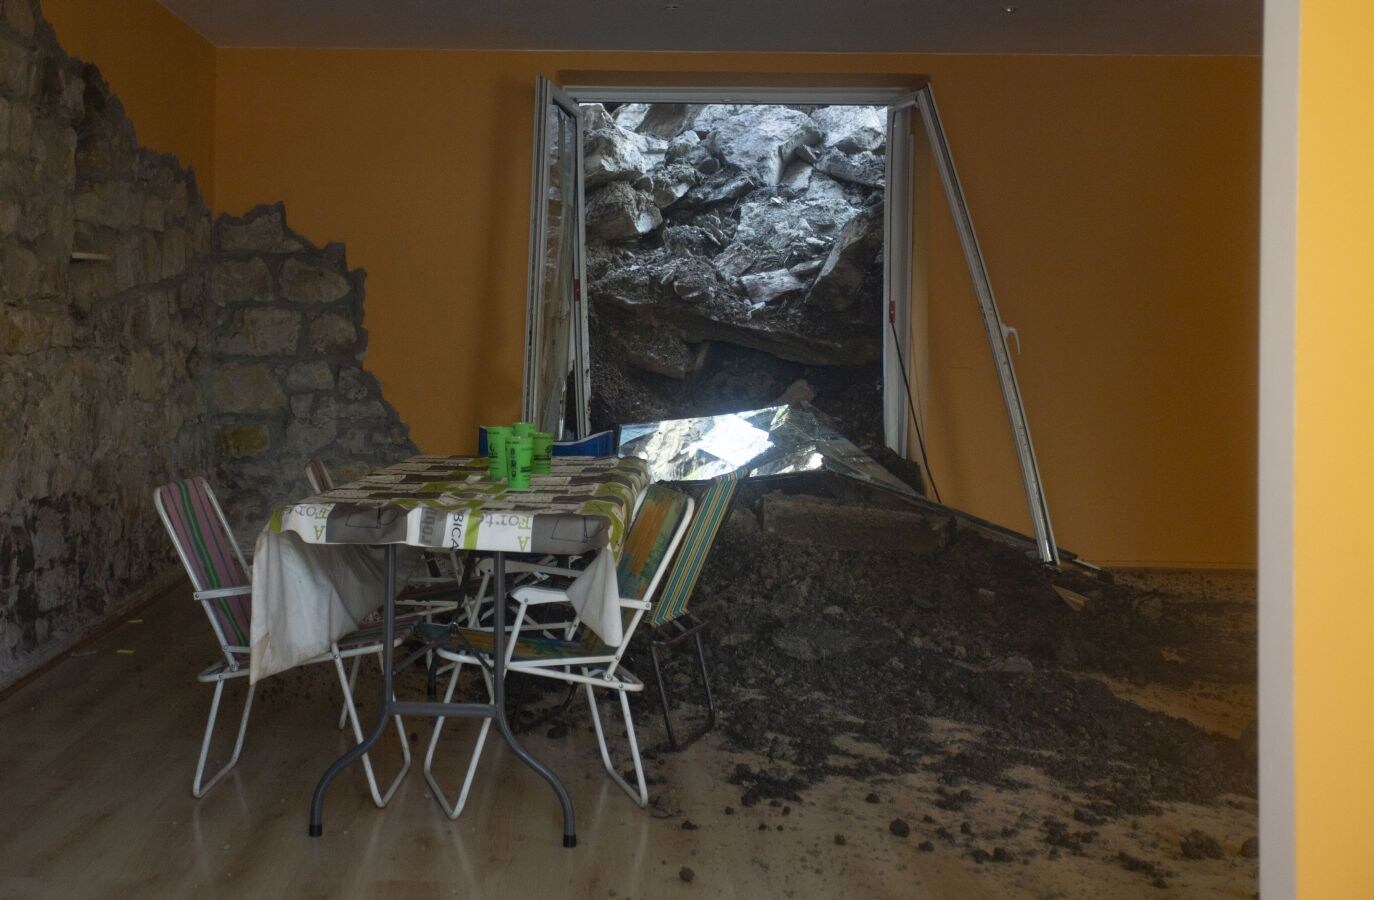 Siete personas han tenido que abandonar sus viviendas por un derrumbe ocurrido en la avenida de Zarautz en Donostia